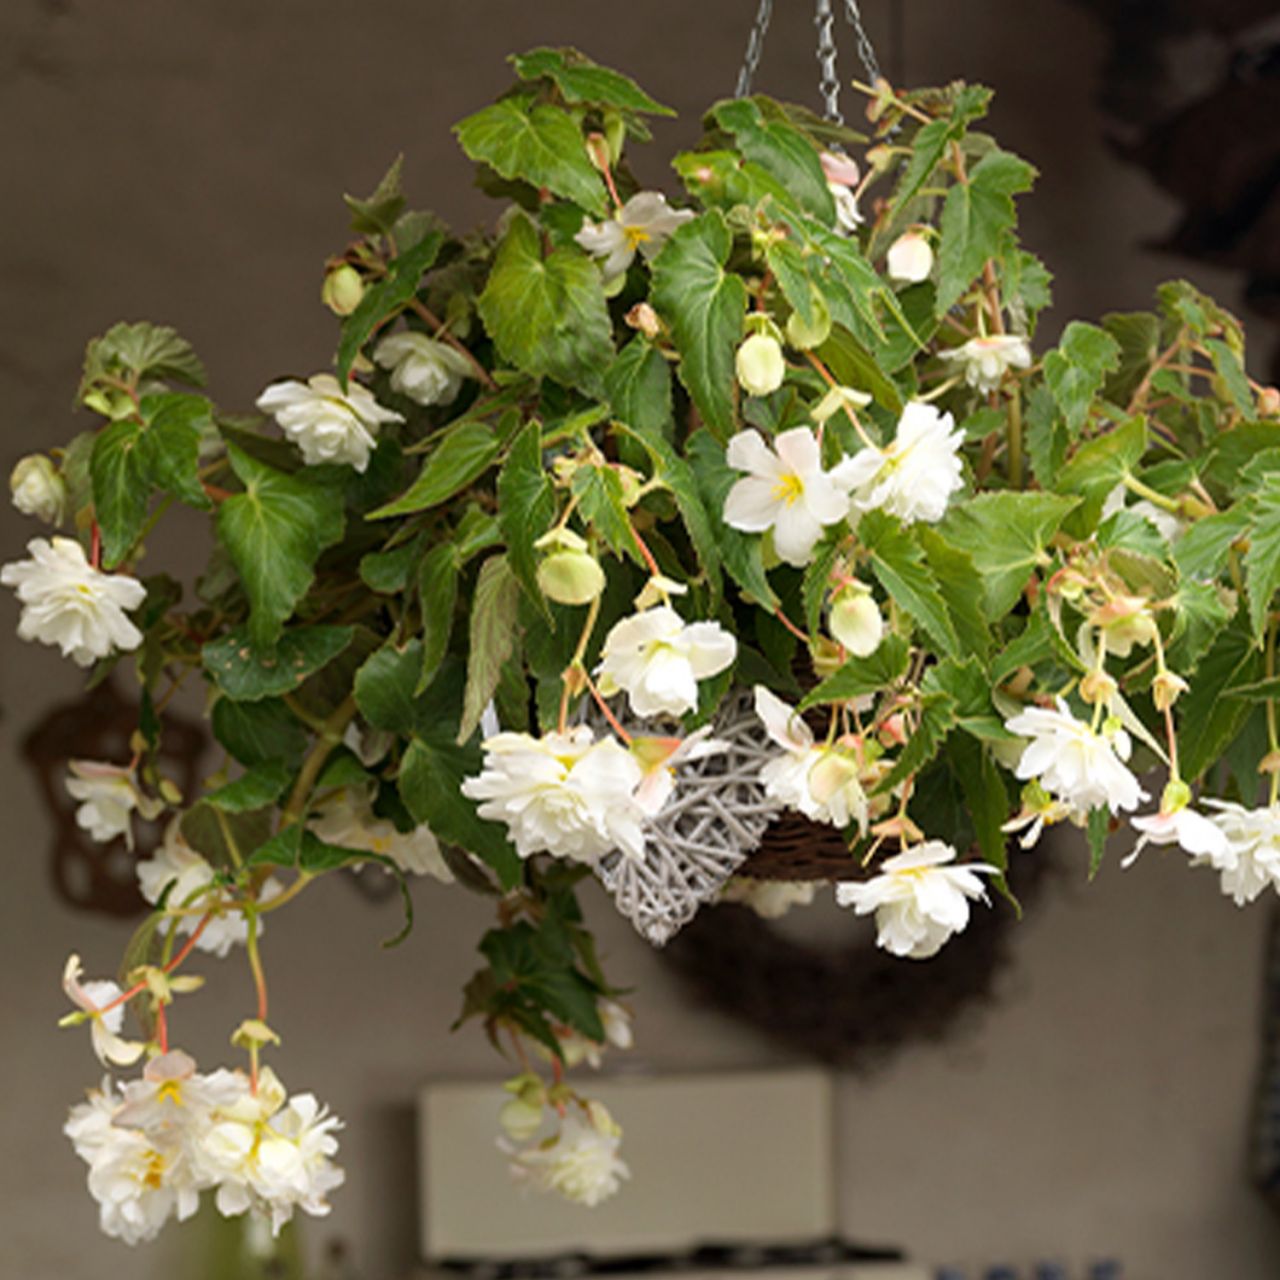 Kategorie <b>Frühlings-Blumenzwiebeln </b> - Hängebegonie 'Pendula Weiß' - 3 Stück - Begonia